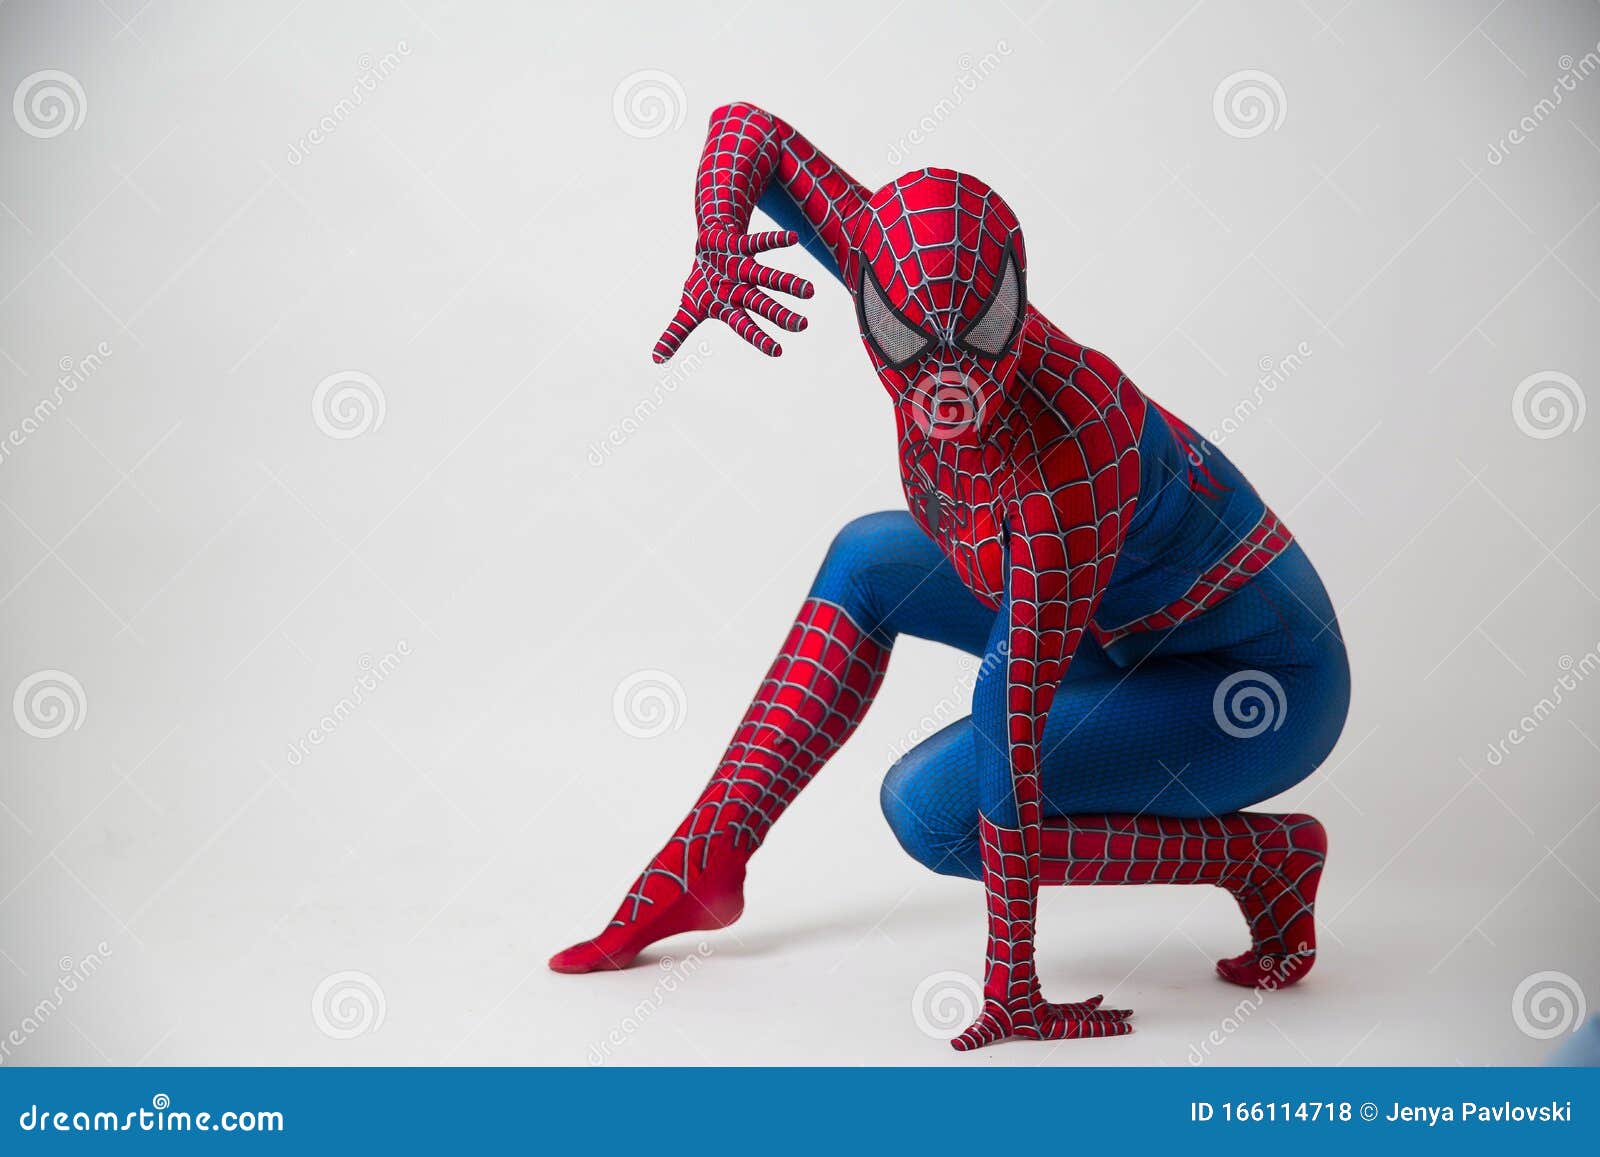 Spider-Man 2 (Film) - TV Tropes